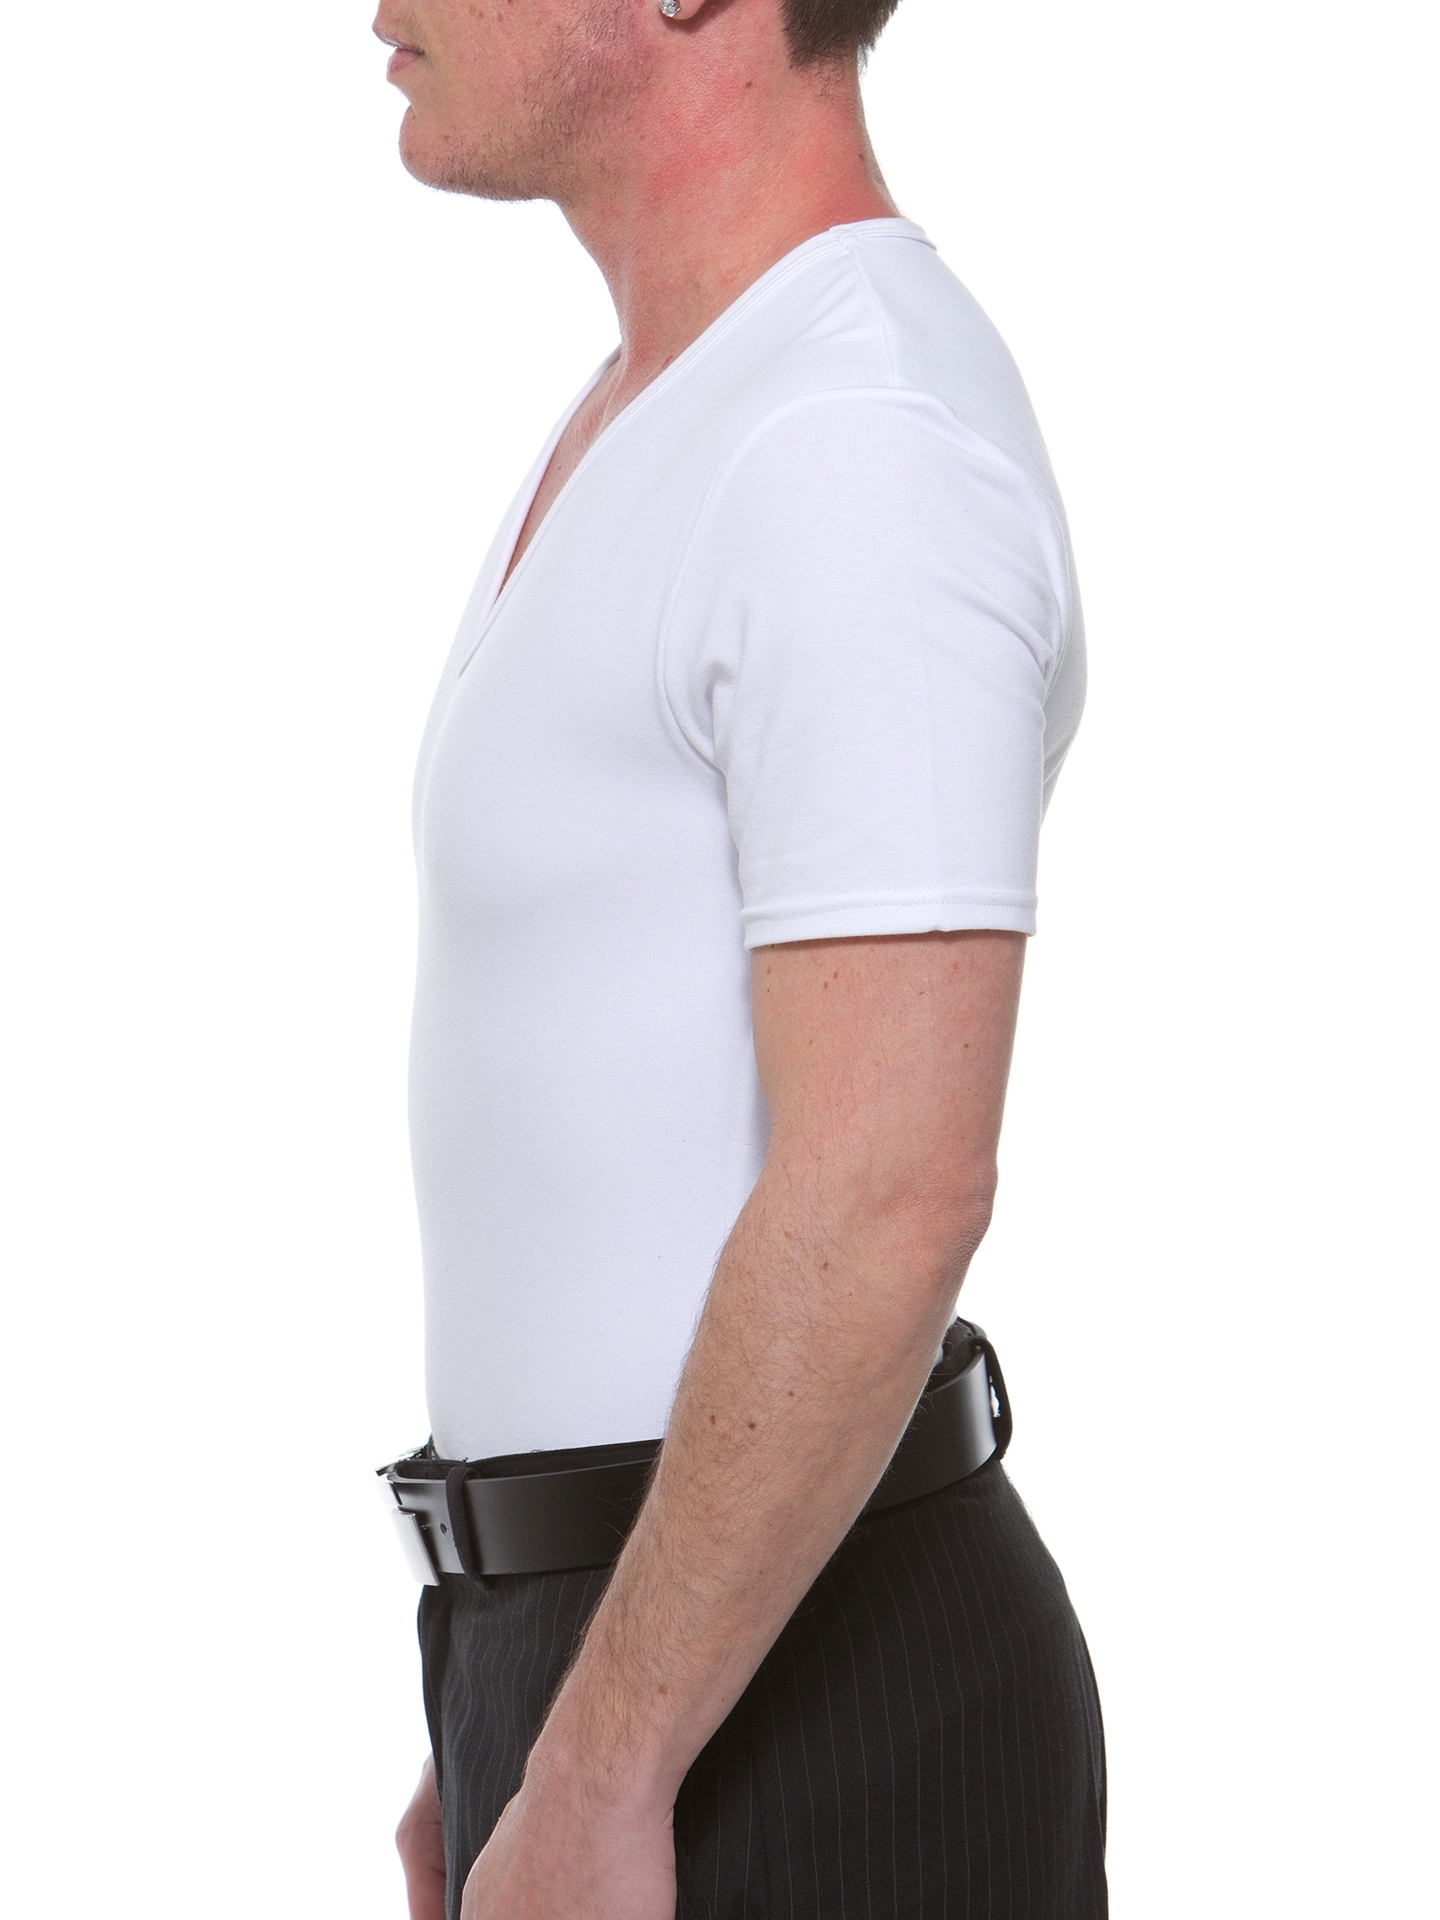 Cotton Concealer V-neck T-shirt. FTM Chest Binders for Trans Men